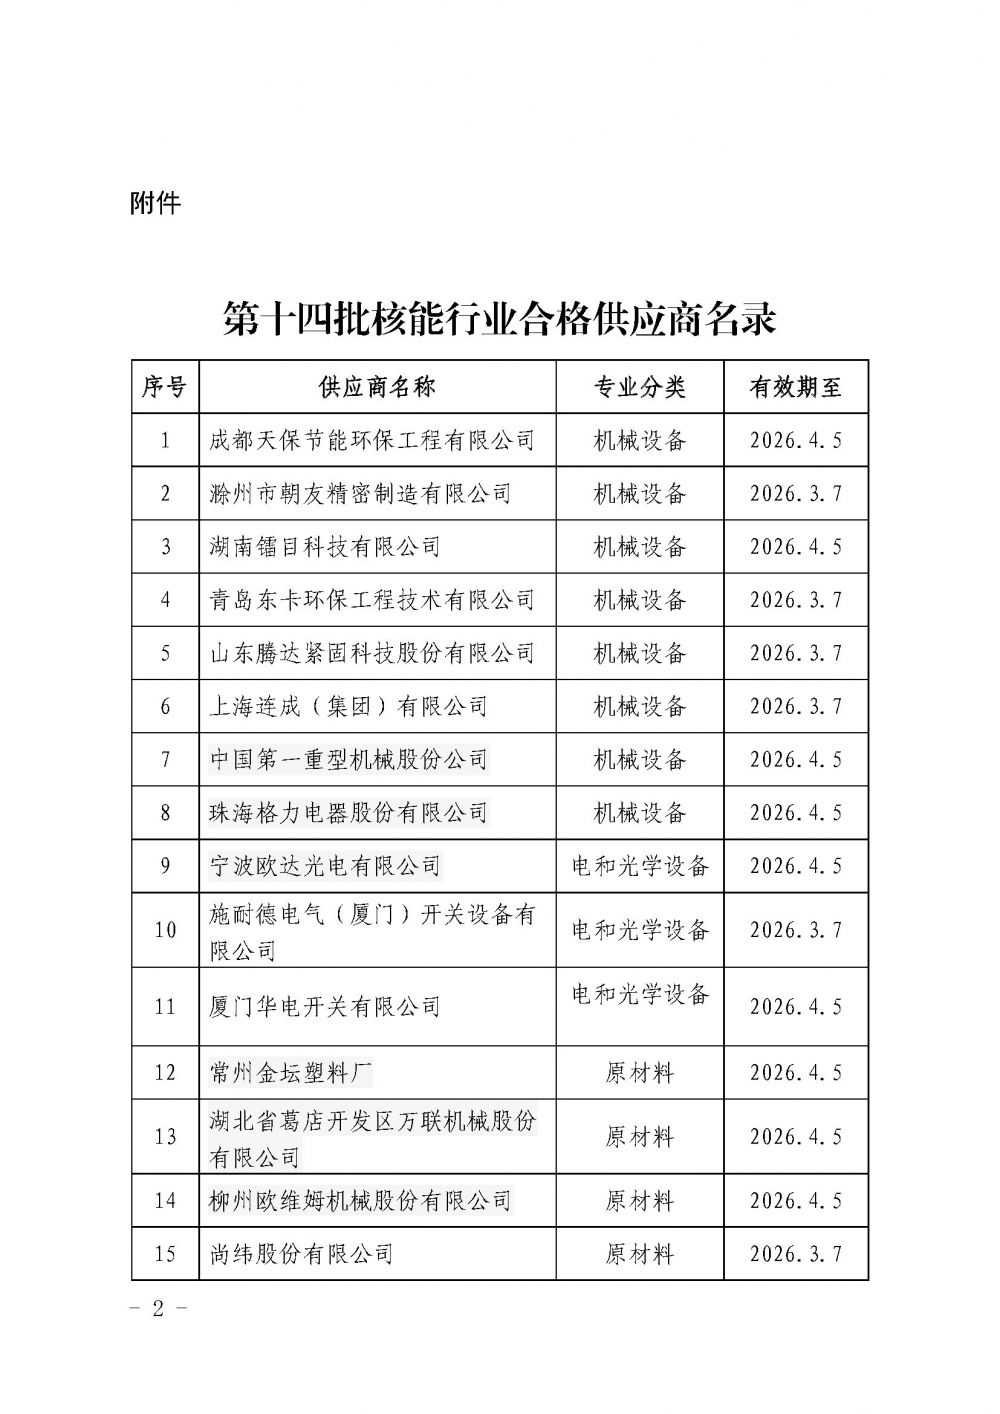 关于发布中国核能行业协会核能行业第十四批合格供应商名录的公告_页面_2.jpg